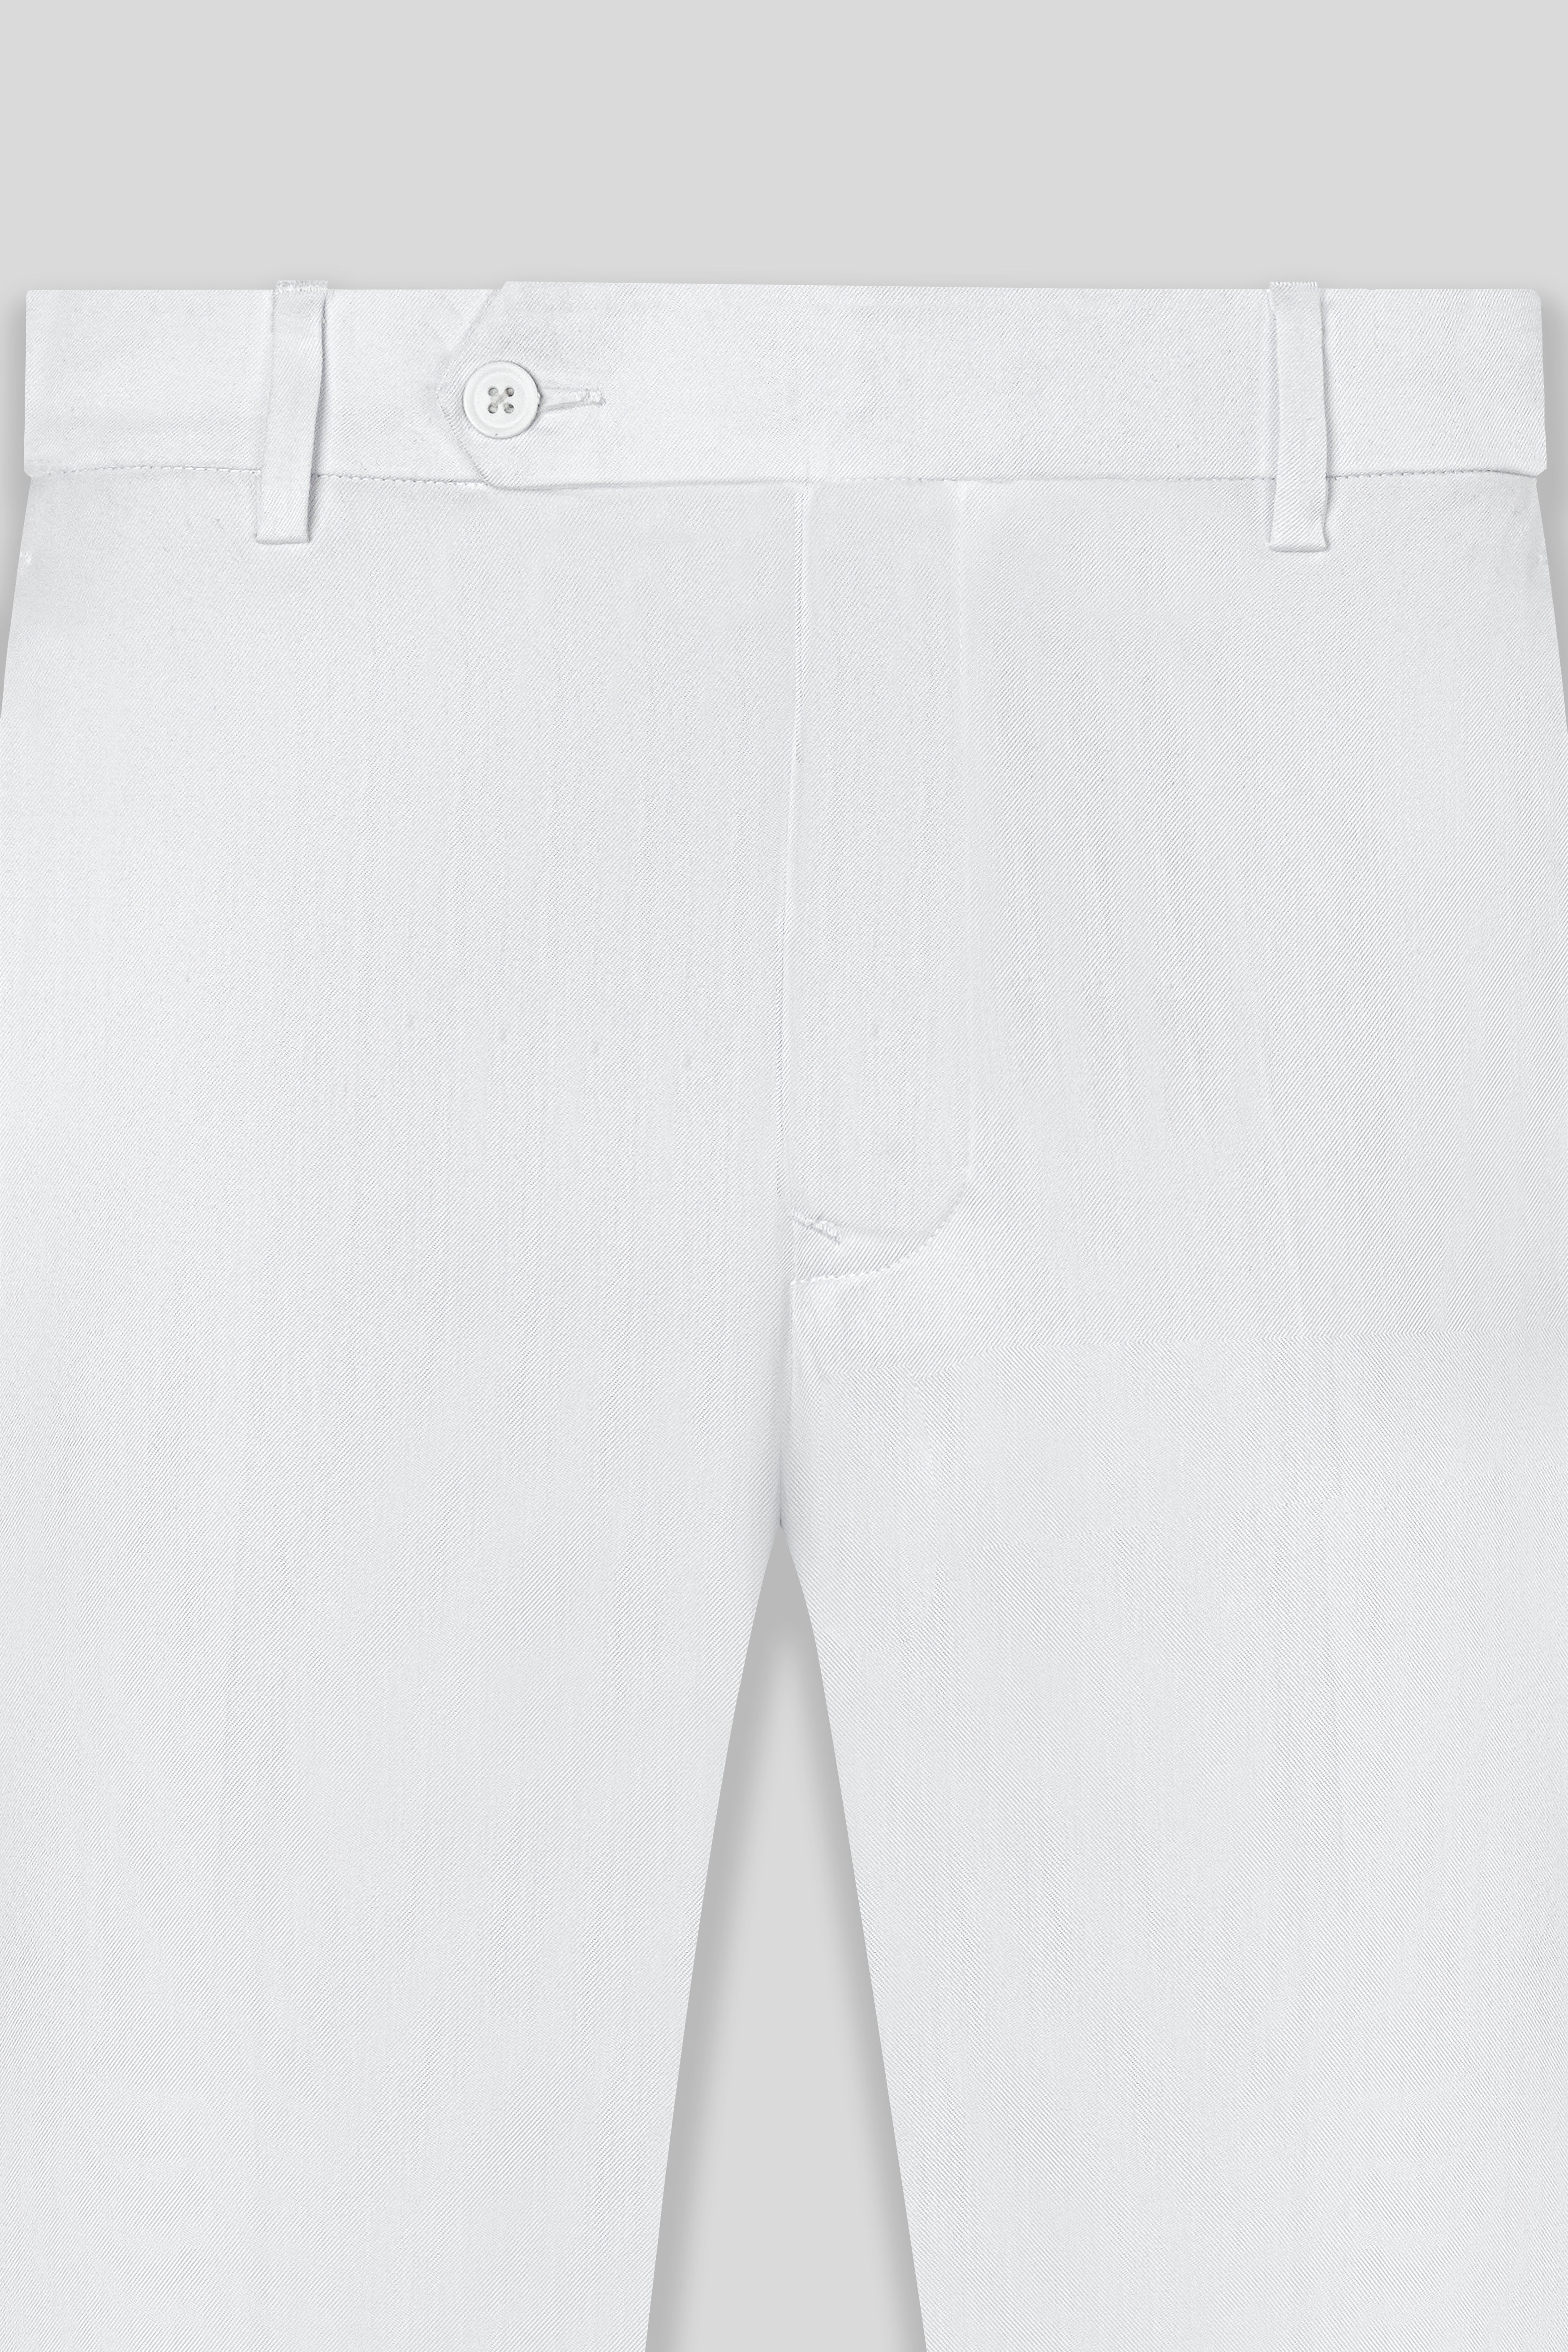 Dove White Wool Rich Bandhgala Designer Suit ST3037-D174-36, ST3037-D174-38, ST3037-D174-40, ST3037-D174-42, ST3037-D174-44, ST3037-D174-46, ST3037-D174-48, ST3037-D174-50, ST3037-D174-52, ST3037-D174-54, ST3037-D174-56, ST3037-D174-58, ST3037-D174-60